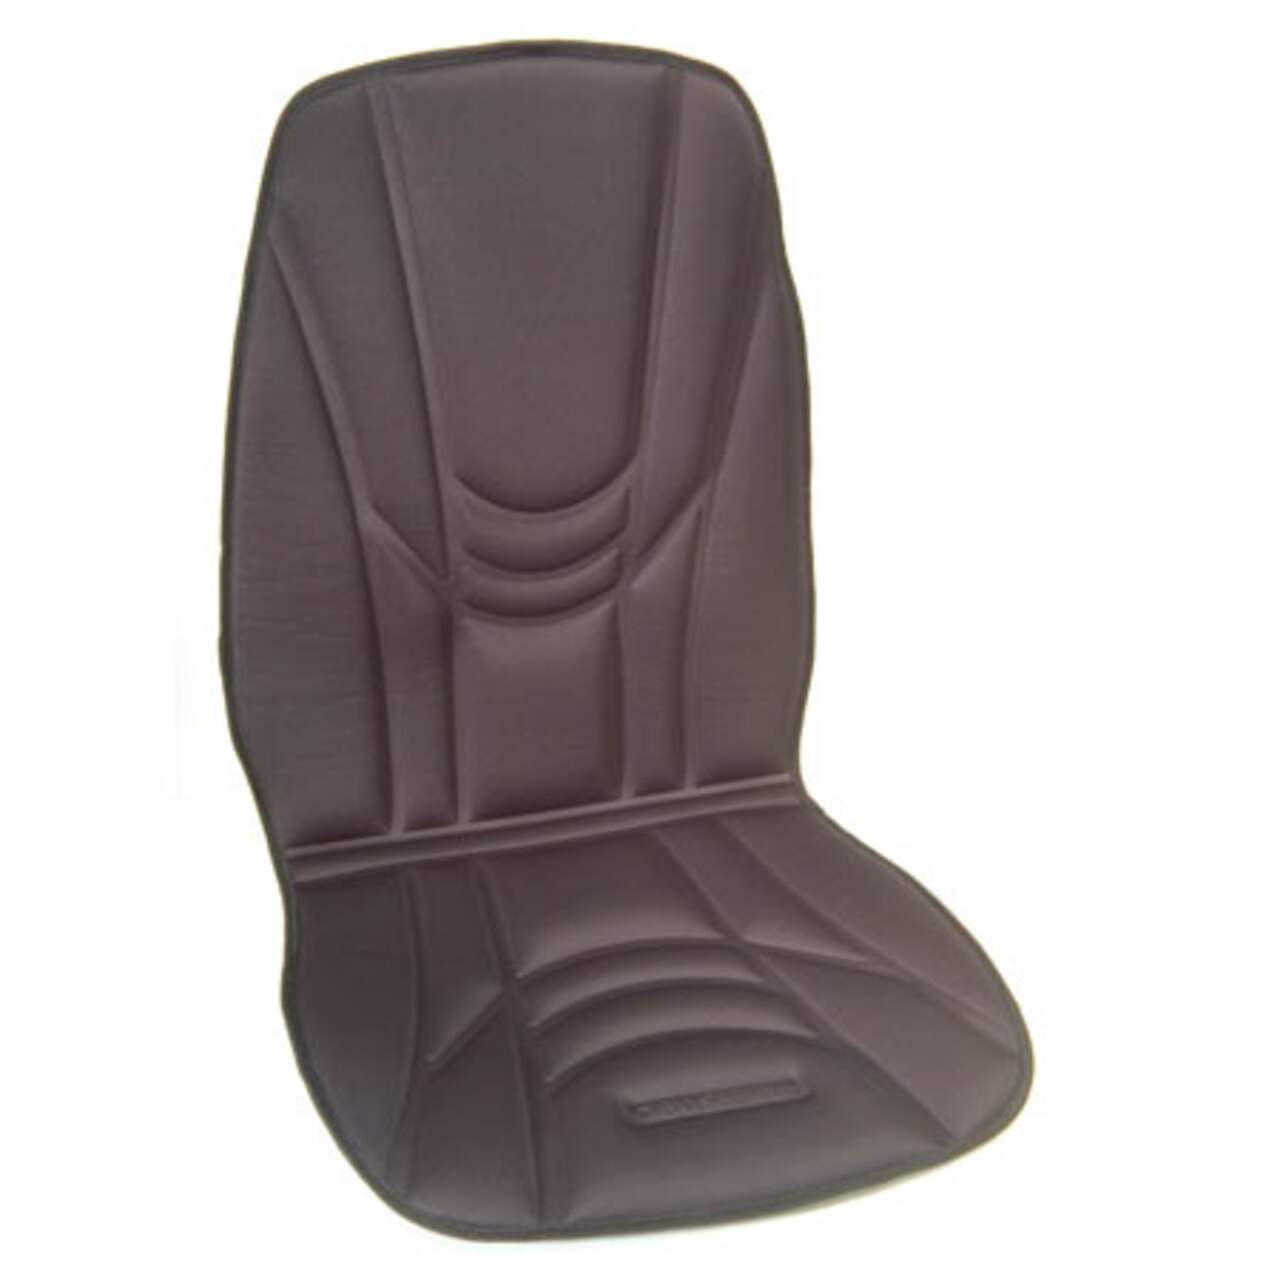 Obusforme CCHCC01 Back & Seat Heated Car Cushion